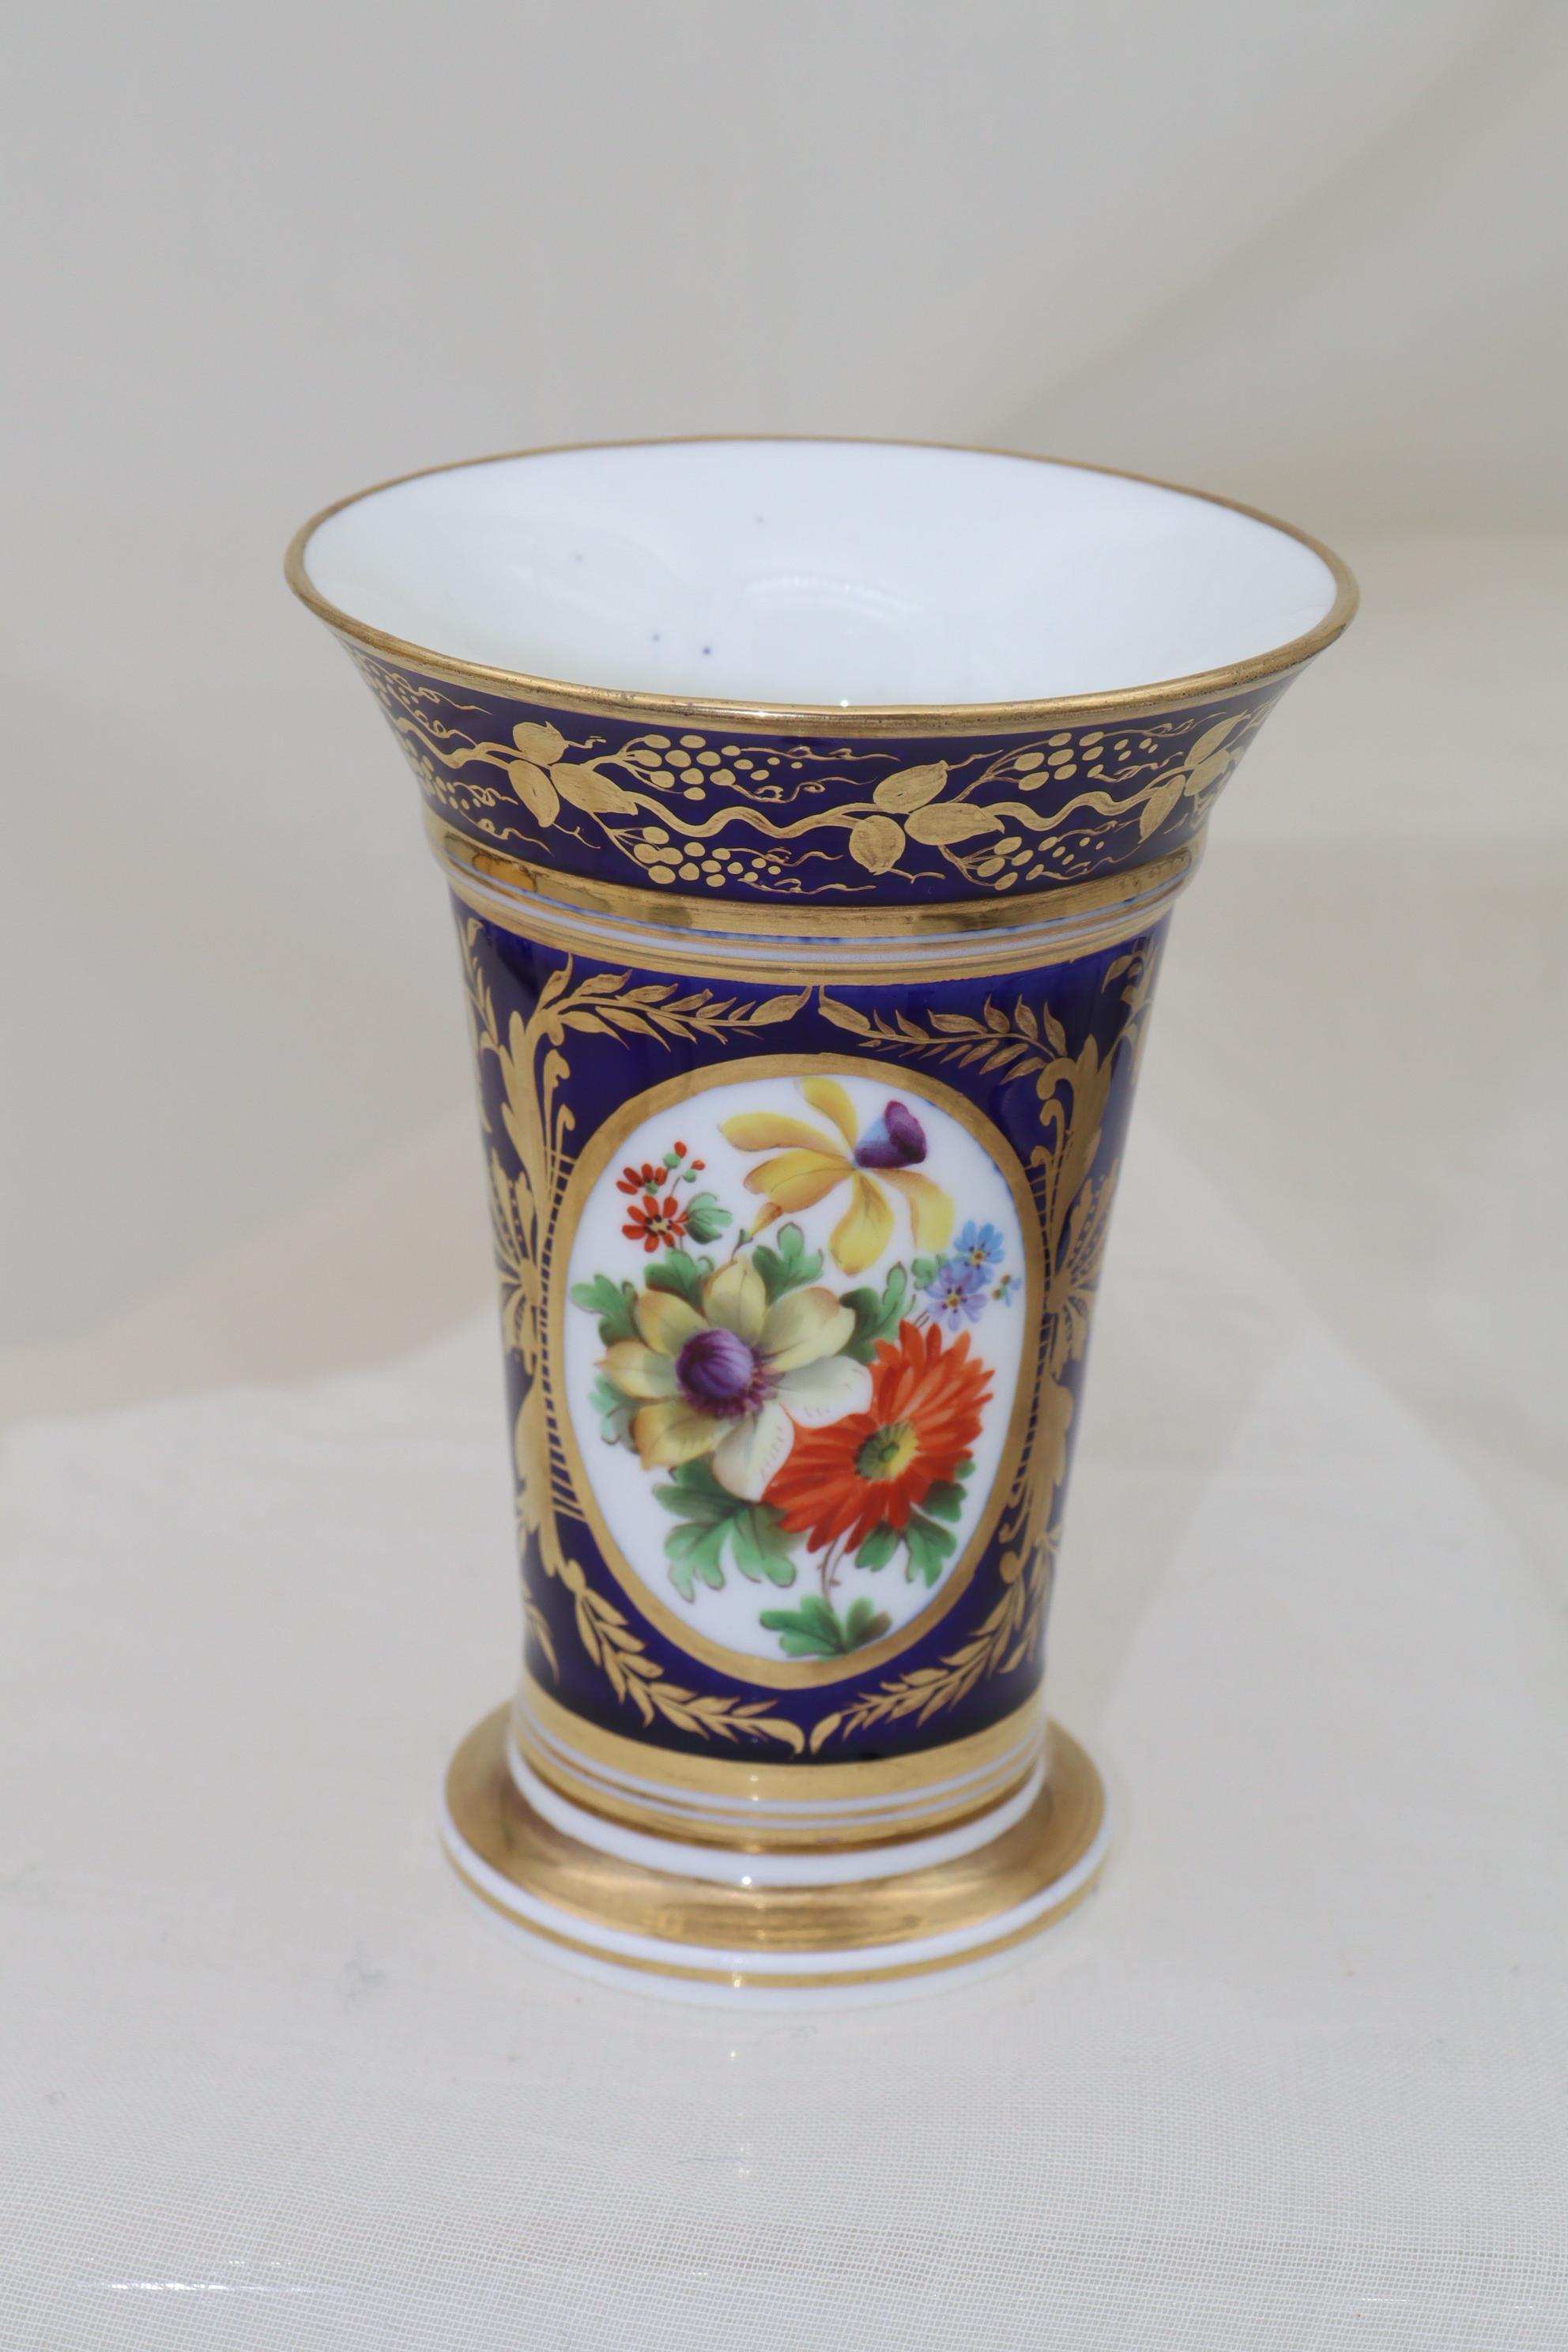 Diese georgianische, handbemalte und vergoldete Vase aus Porzellan zeigt eine vergoldete ovale Kartusche, die mit einem bunten Blumenstrauß gefüllt ist. Die Kartusche wird auf beiden Seiten von einem komplizierten vergoldeten Motiv getragen, das am